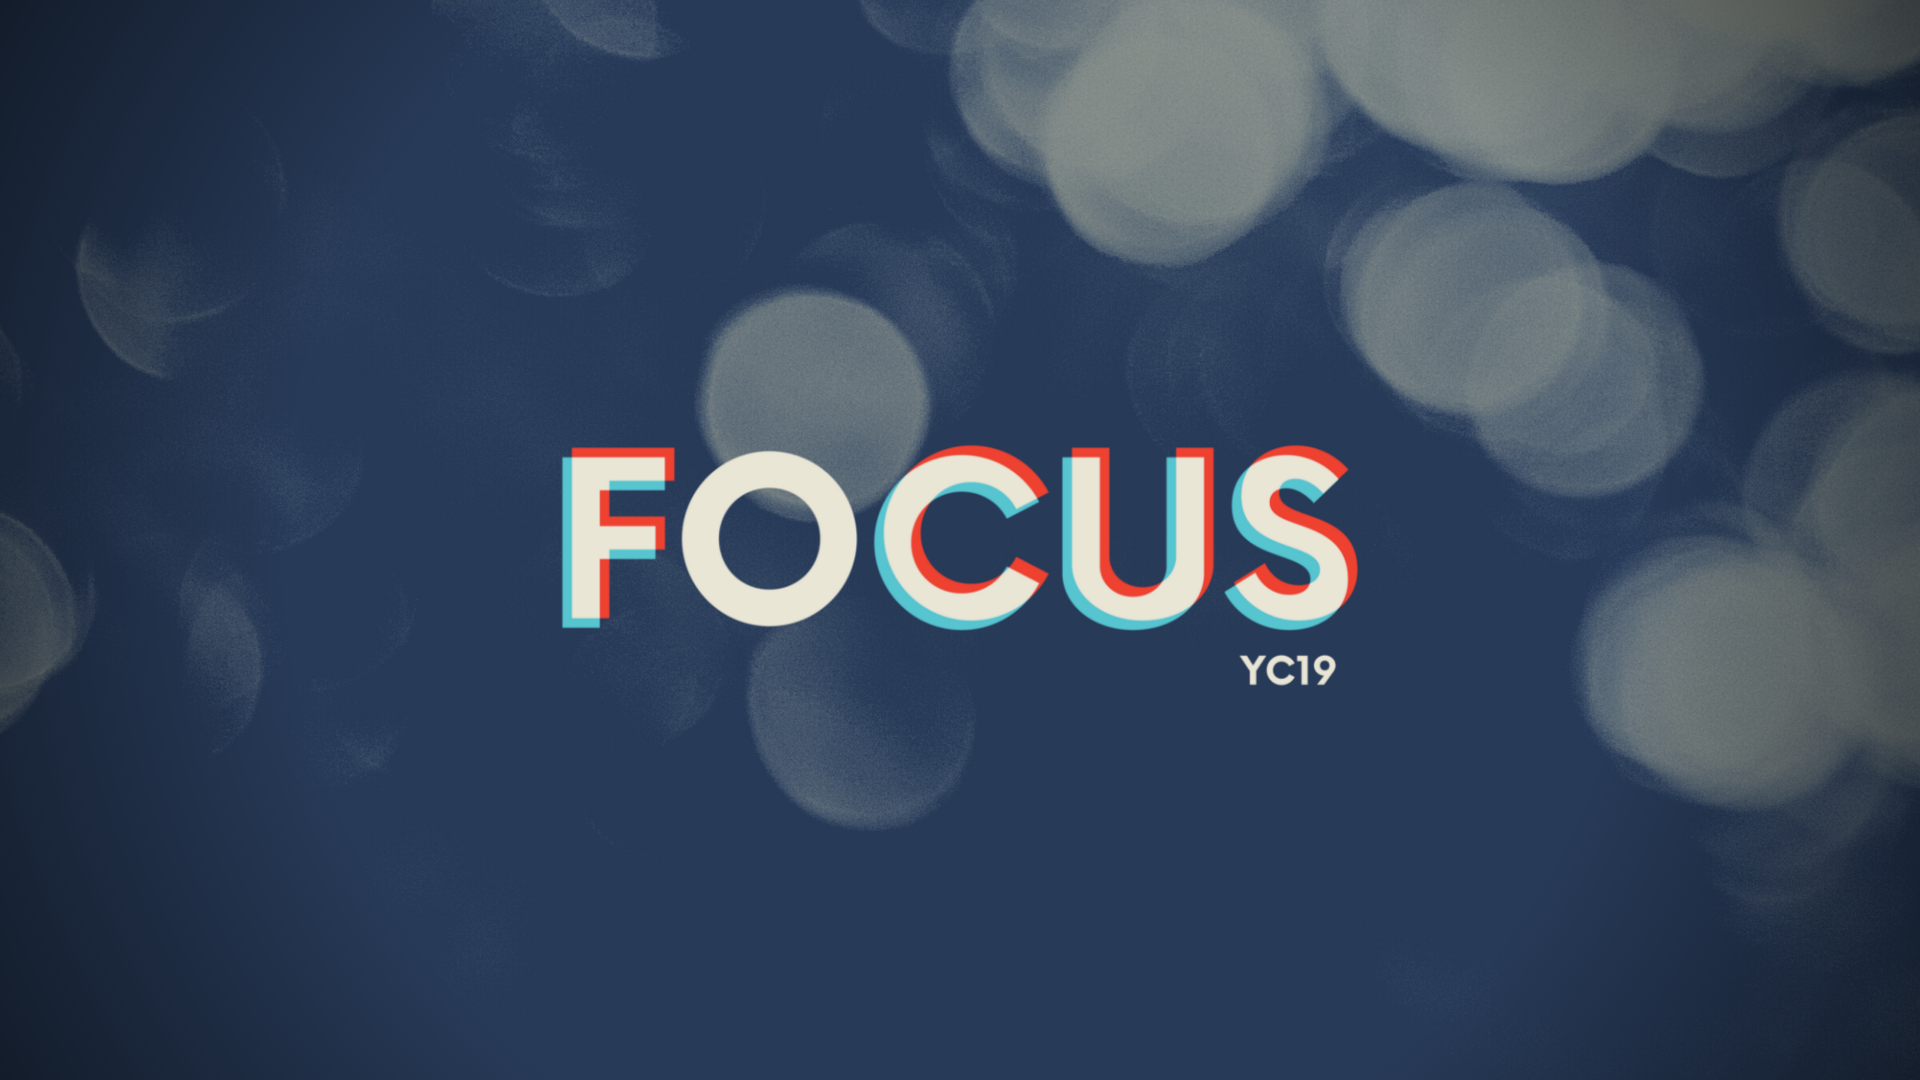 YC2019 - Focus